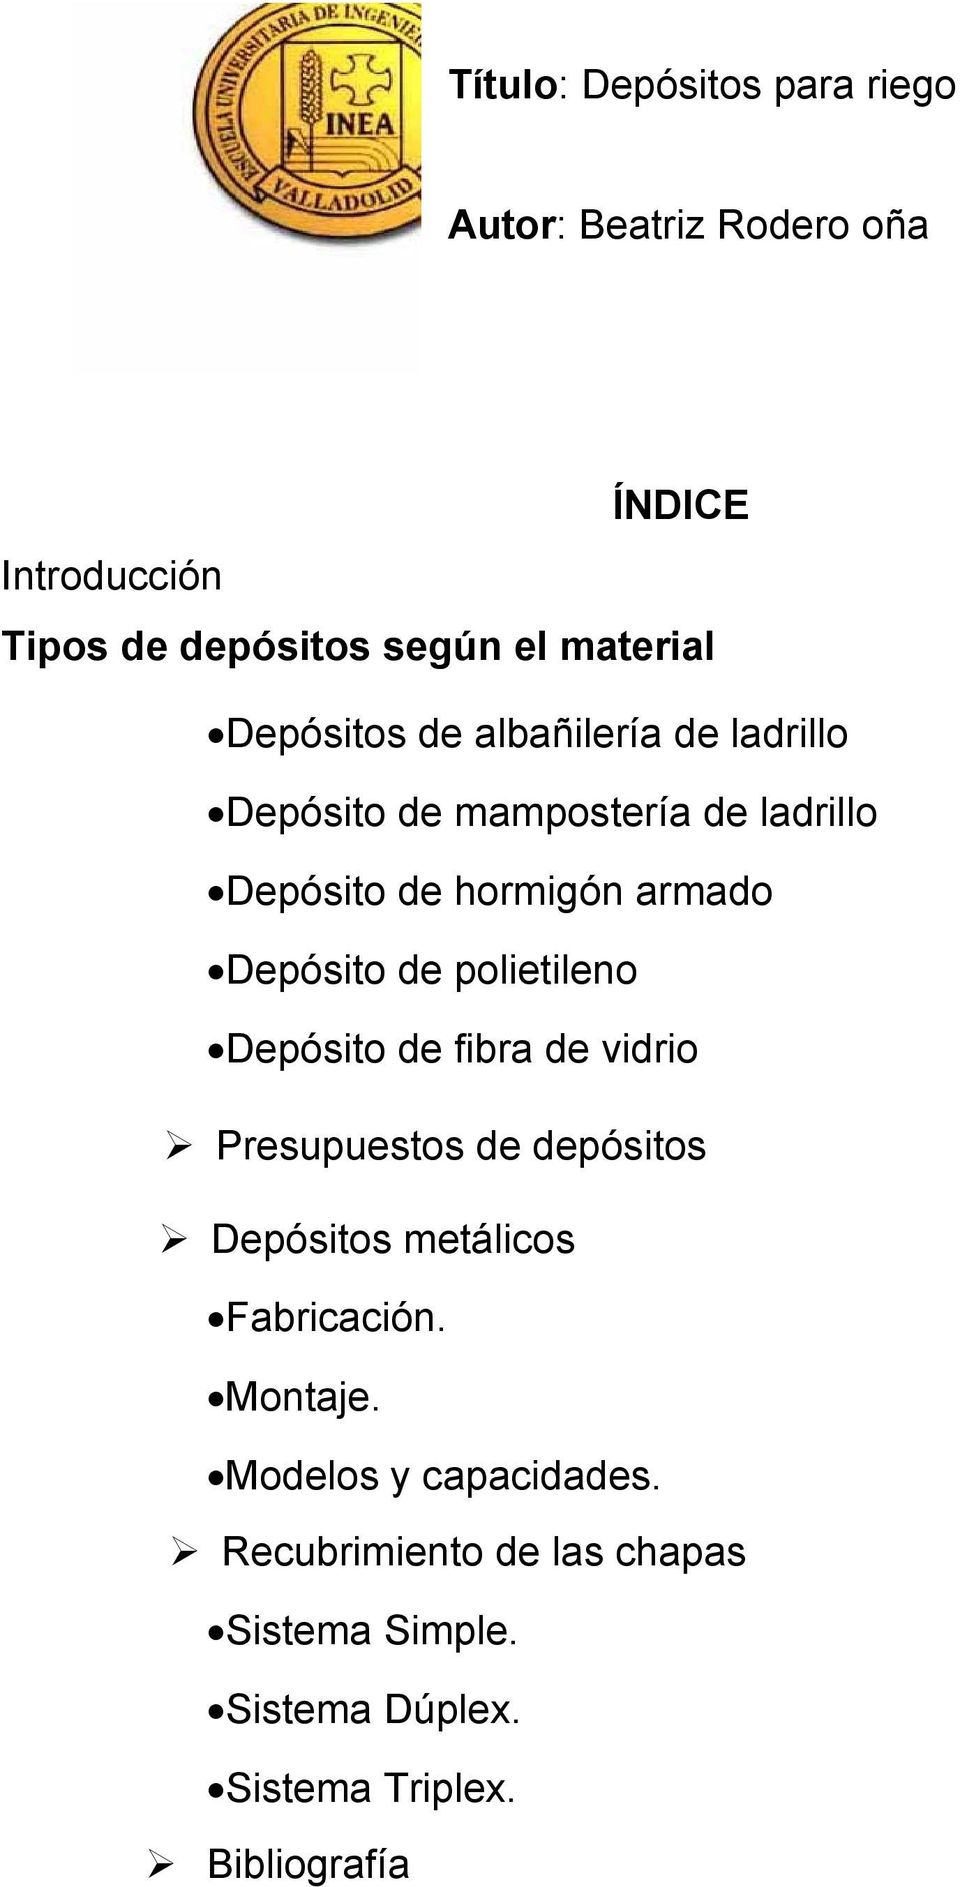 polietileno Depósito de fibra de vidrio Presupuestos de depósitos... p.3 Depósitos metálicos... p.5 Fabricación.